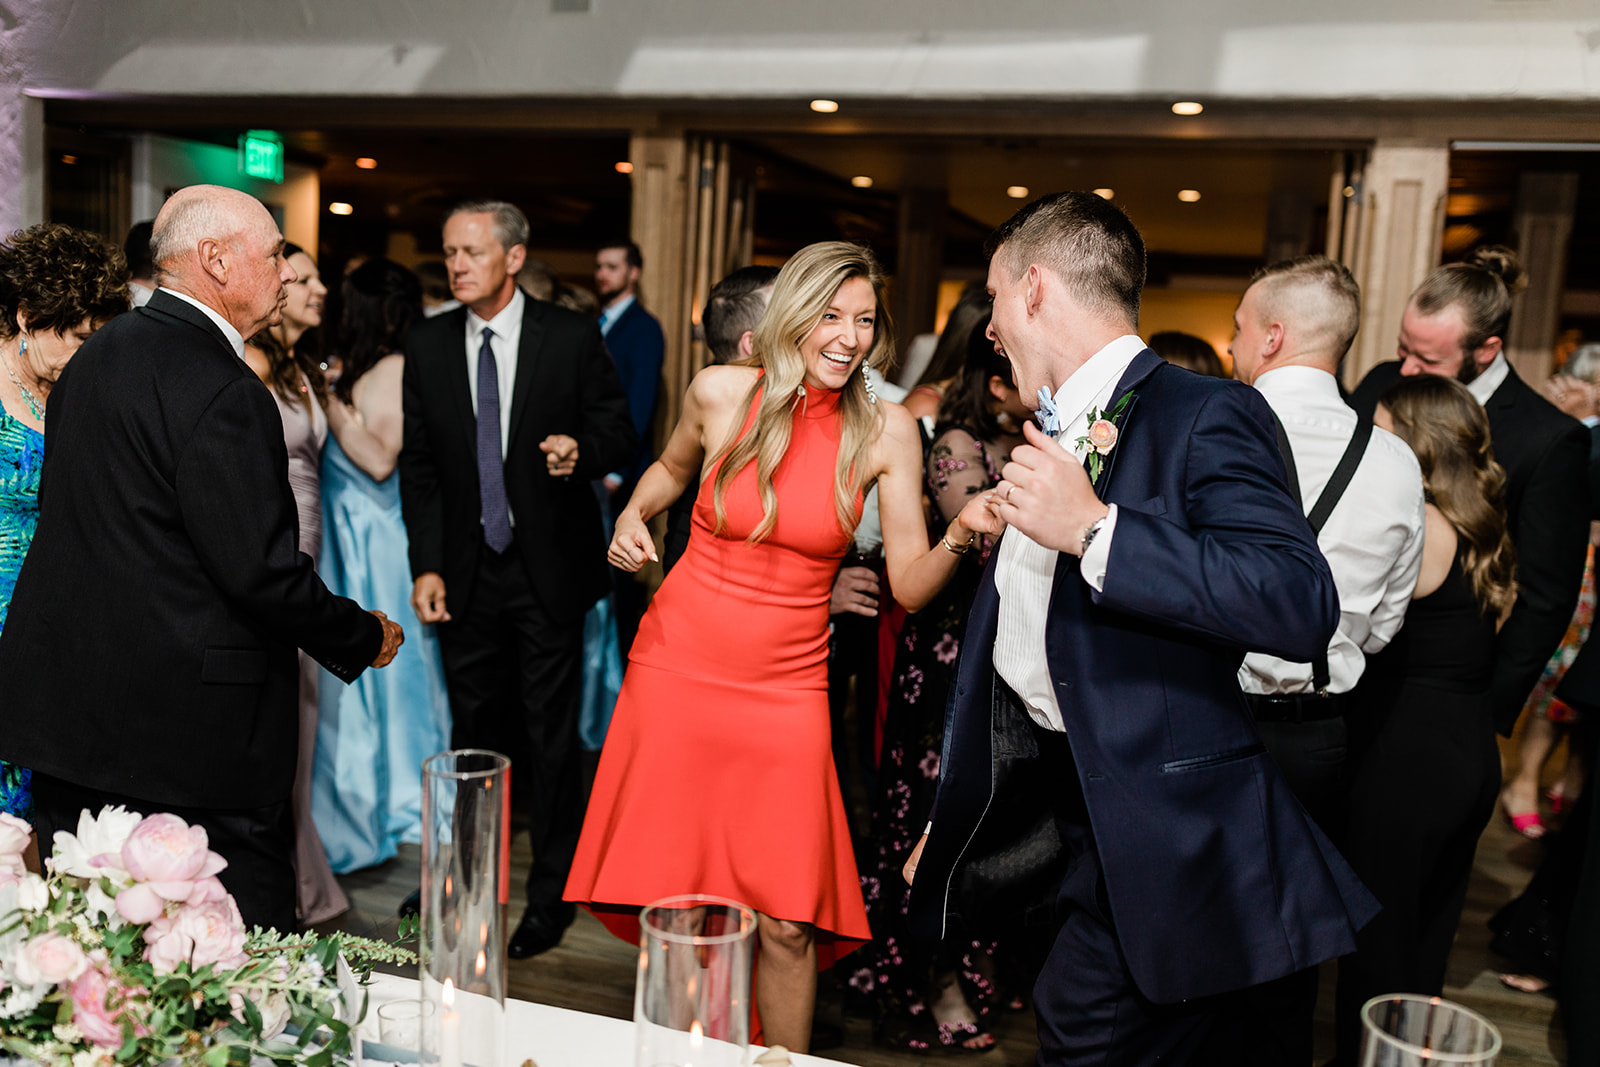 guests dance at wedding reception in Vail Colorado